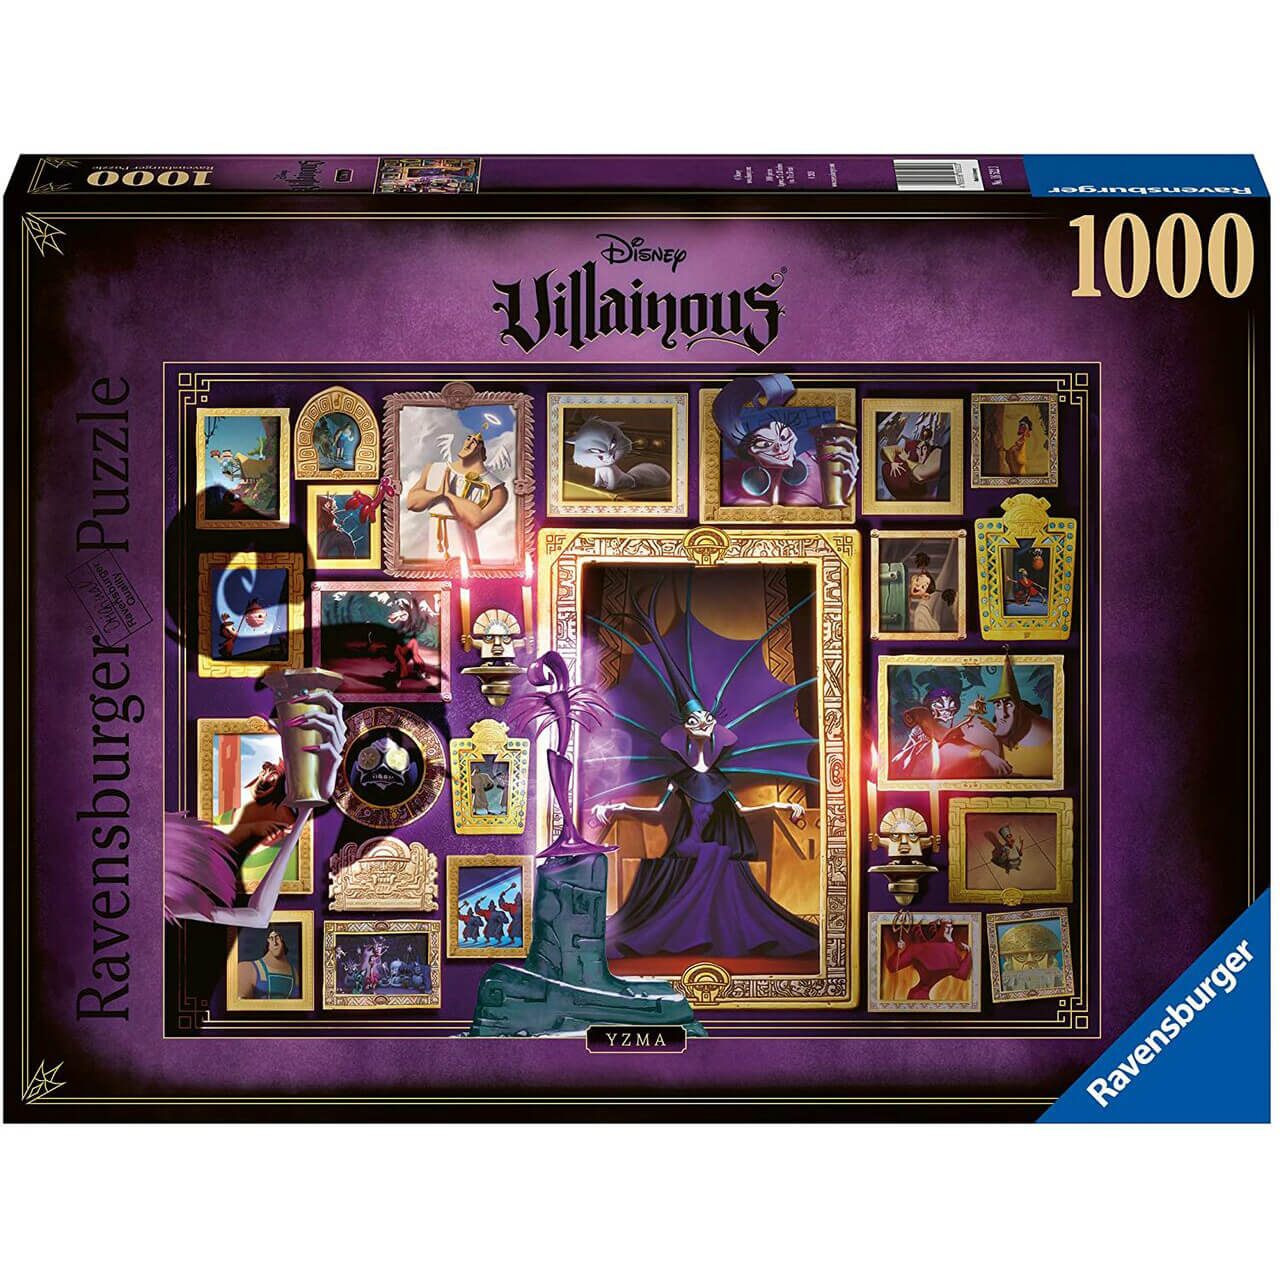 Ravensburger Disney Villainous: Yzma 1000 Piece Puzzle